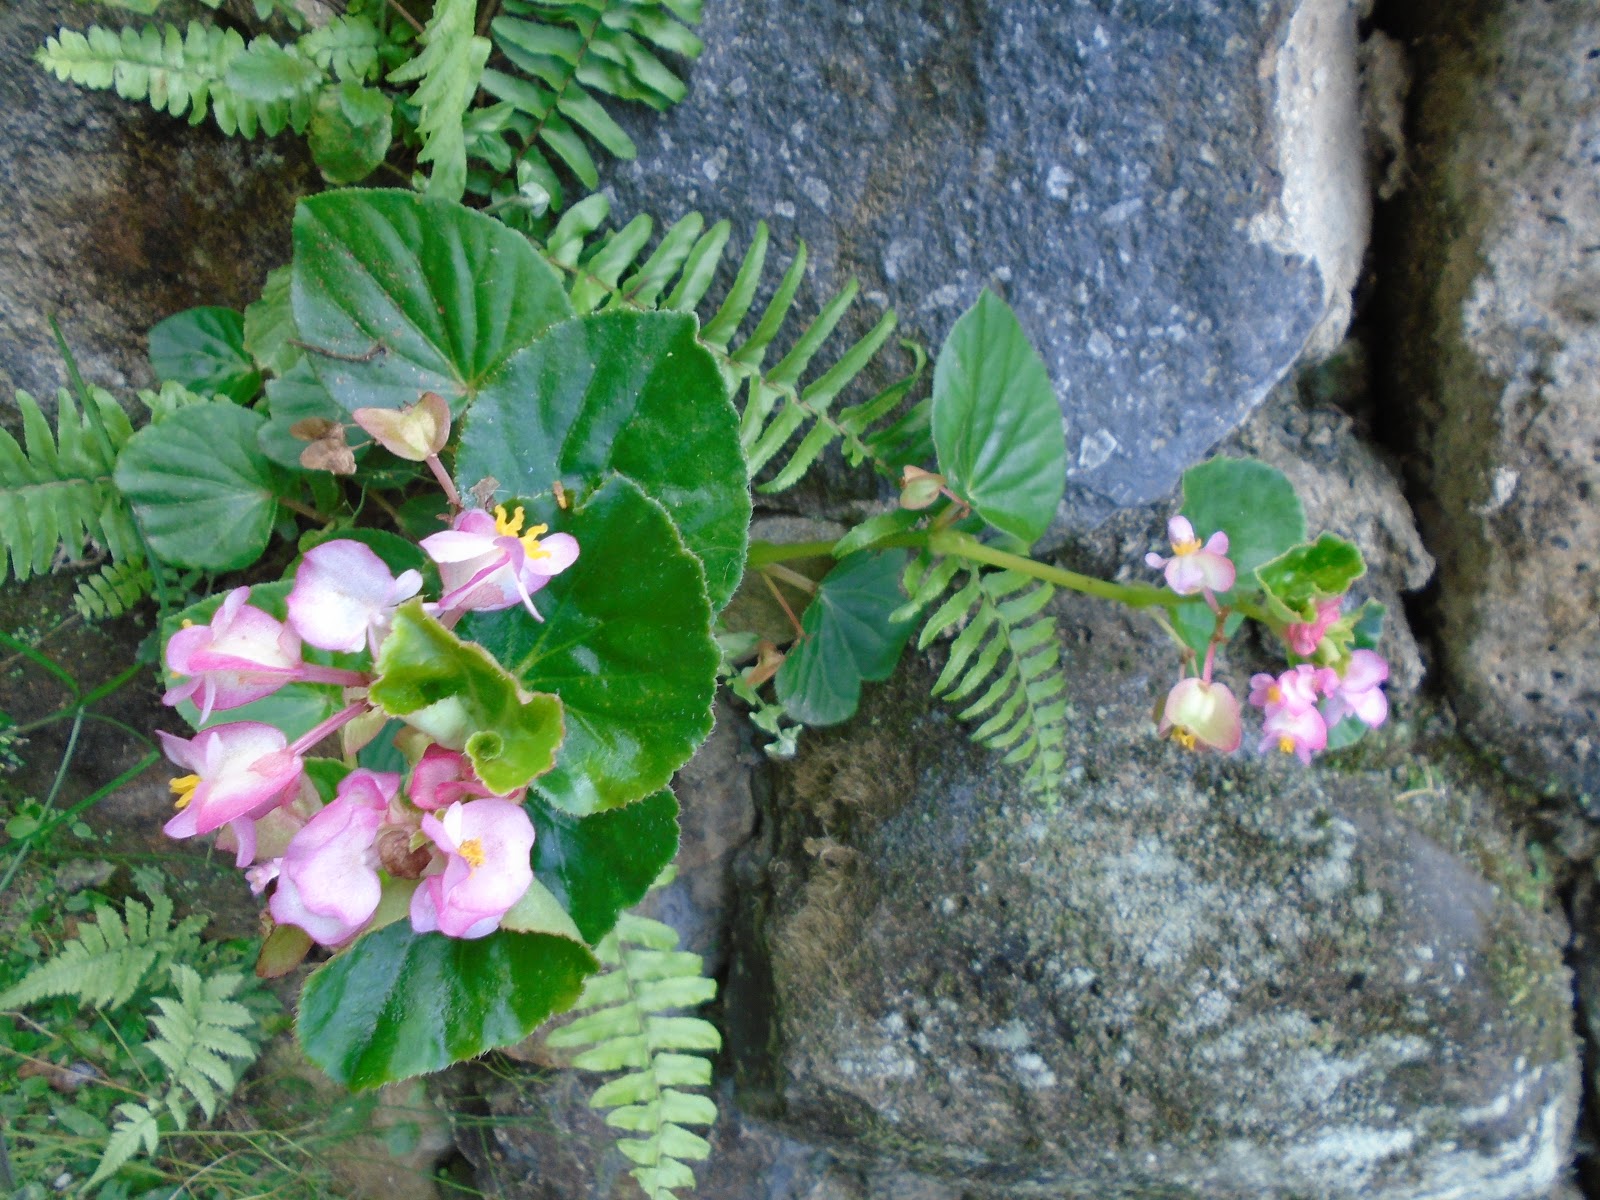 Sabores do Mato - Panc's e plantas medicinais: BEGÔNIA DE JARDIM, AZEDINHA,  Begonia semperflorens e BEGÔNIA DE BREJO, Begonia cucullata